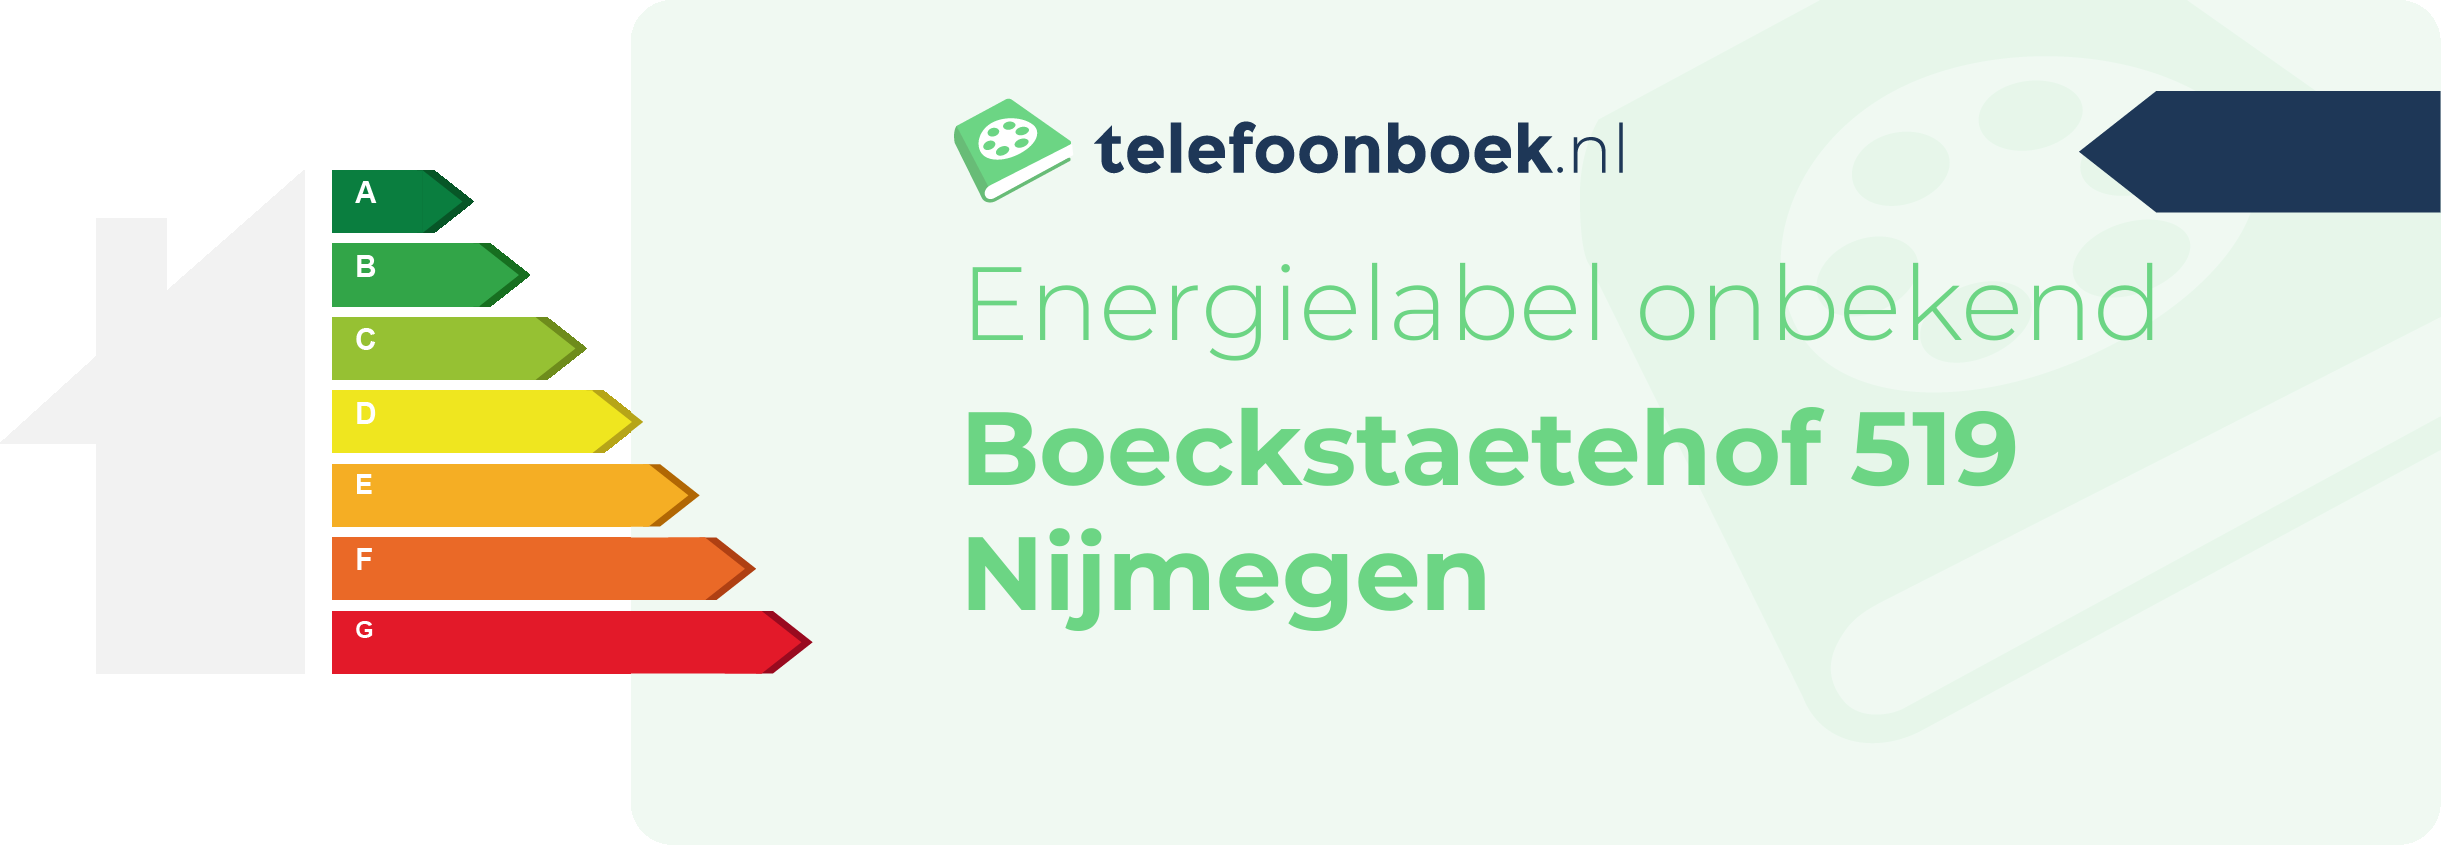 Energielabel Boeckstaetehof 519 Nijmegen